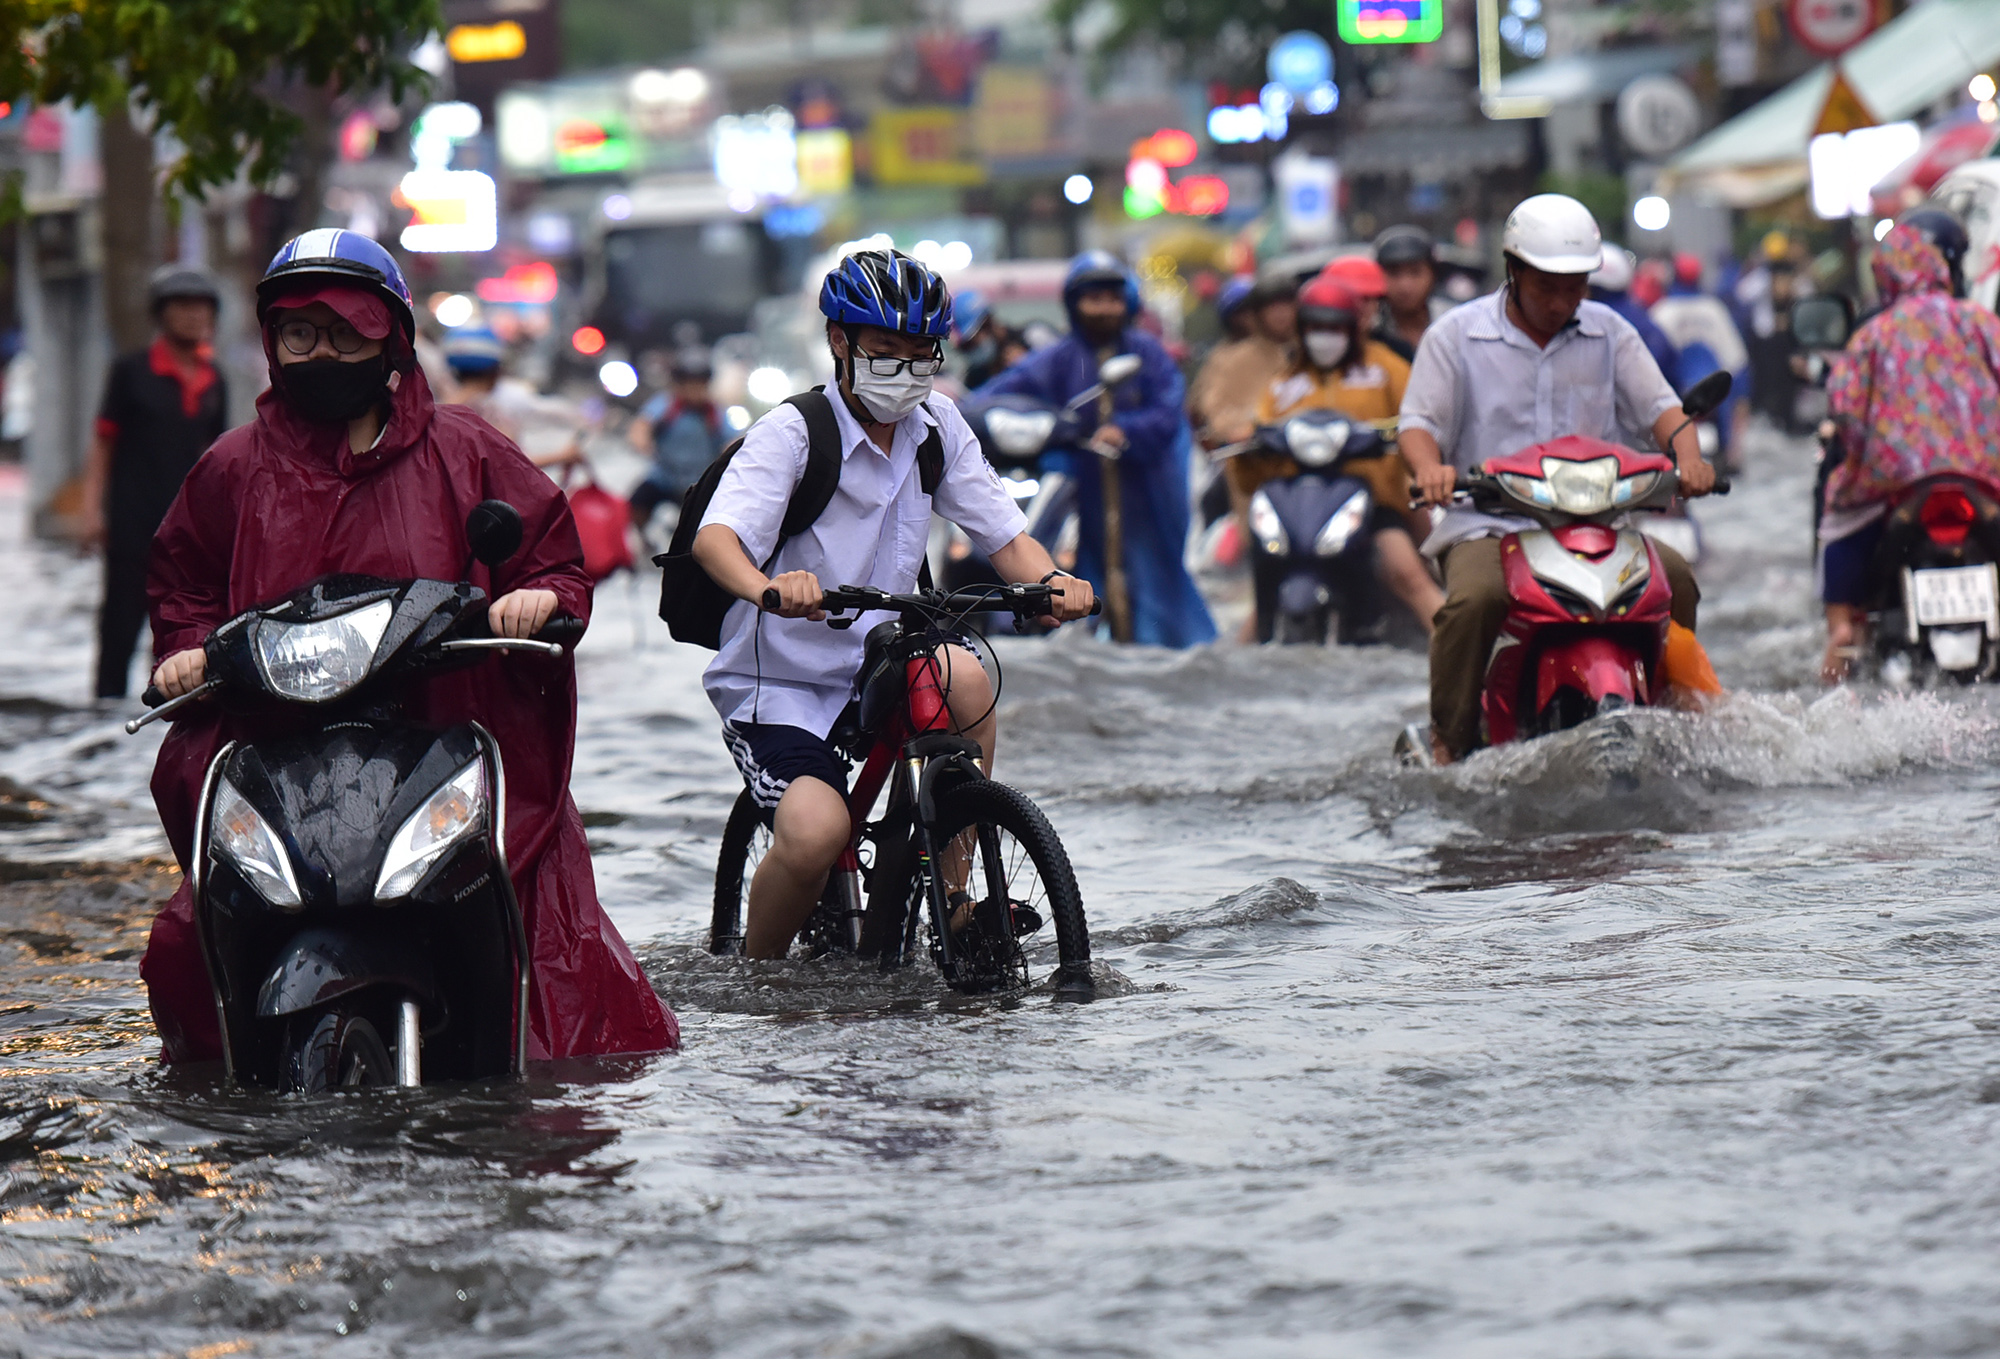 Đường ngập lút bánh xe, người người vất vả lội nước về nhà sau trận “mưa vàng” - 8